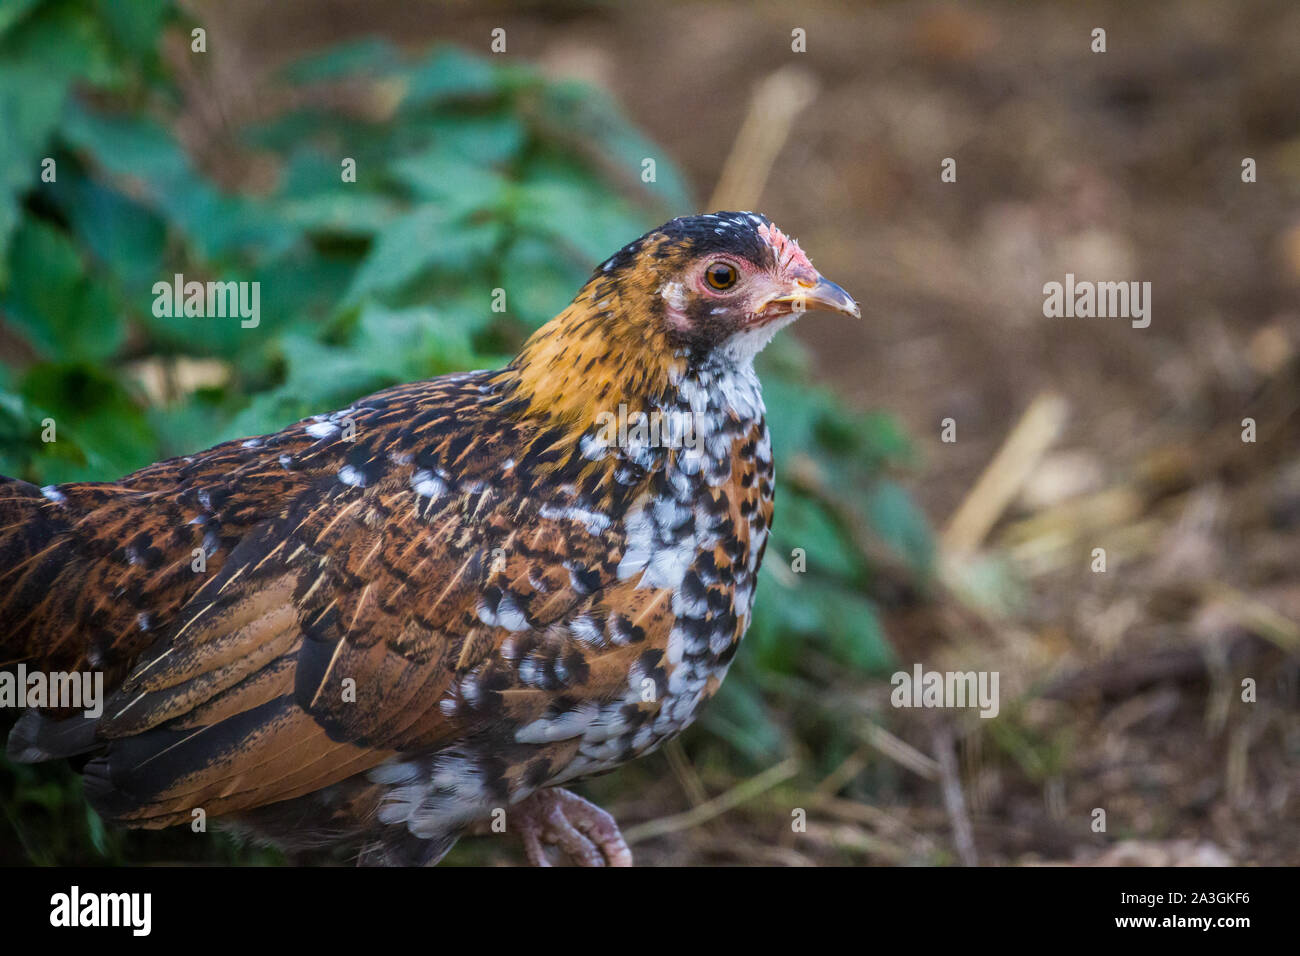 Portrait einer jungen Huhn - Stoapiperl/Steinhendl, eine vom Aussterben bedrohte Rasse Huhn aus Österreich Stockfoto